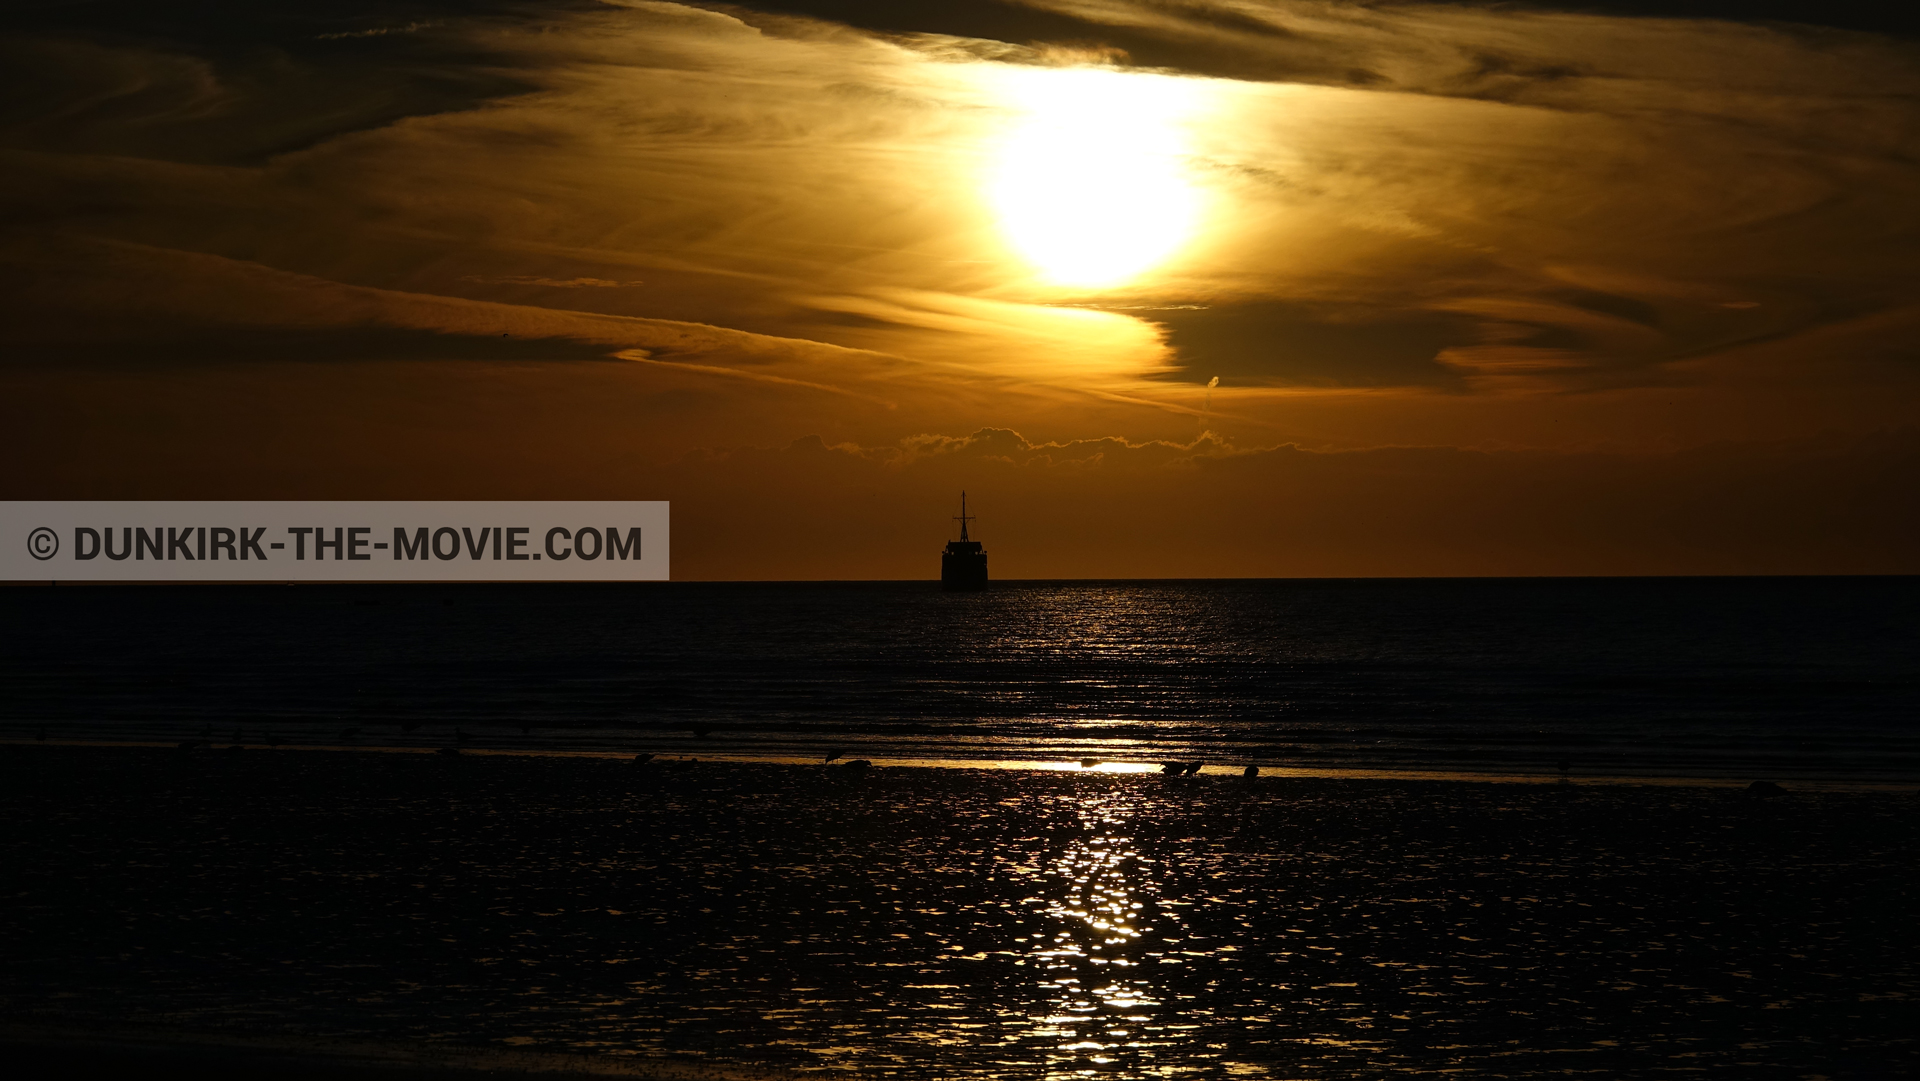 Fotos con barco, cielo anaranjado,  durante el rodaje de la película Dunkerque de Nolan